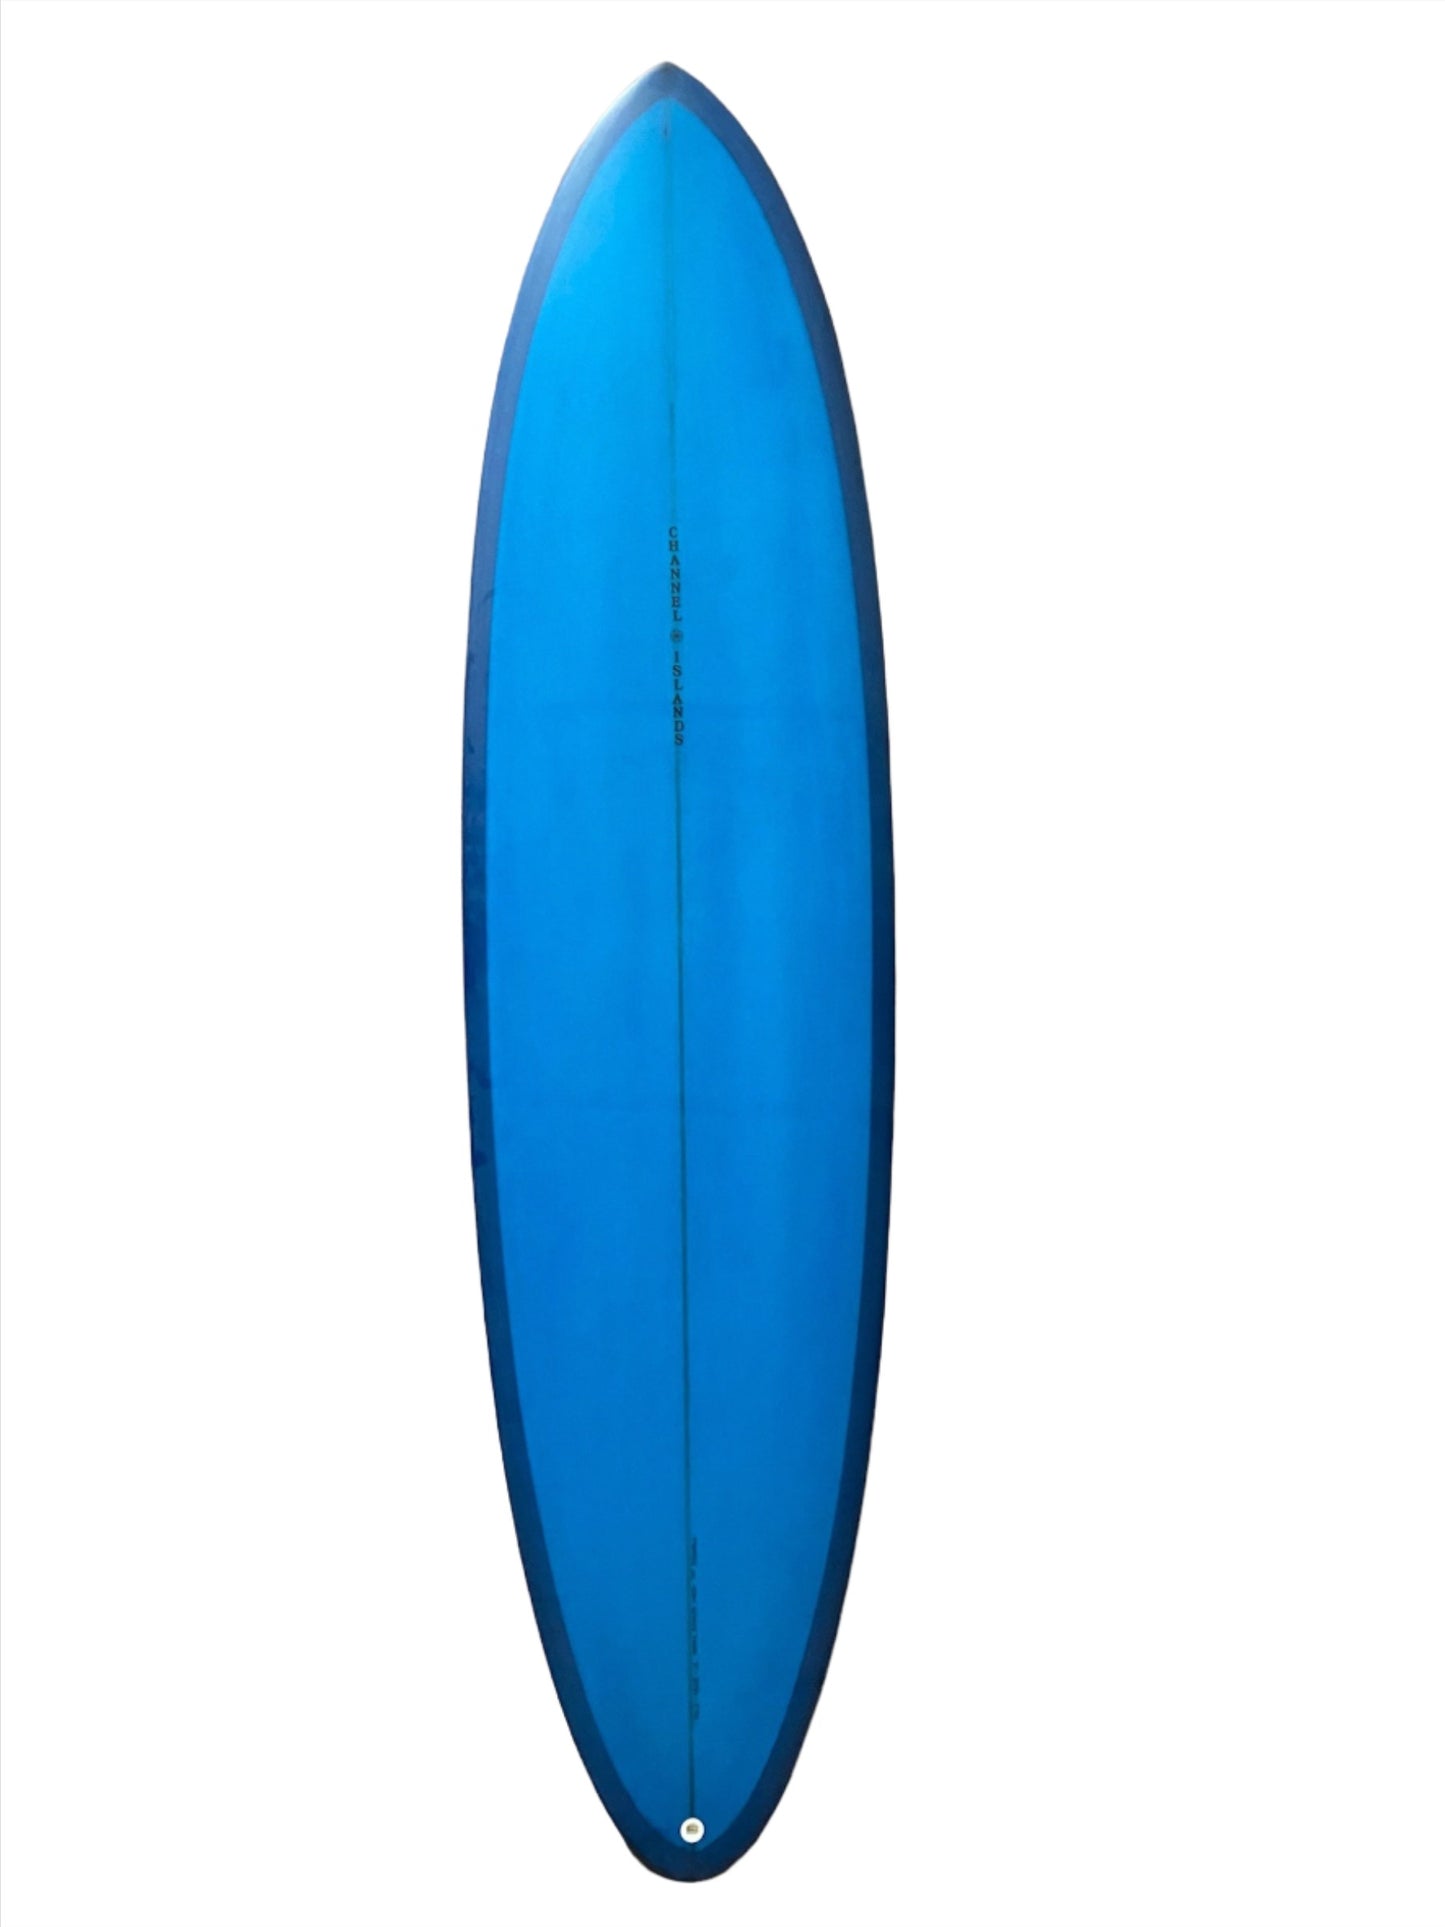 Channel Islands Mid Twin 7'1" Surfboard